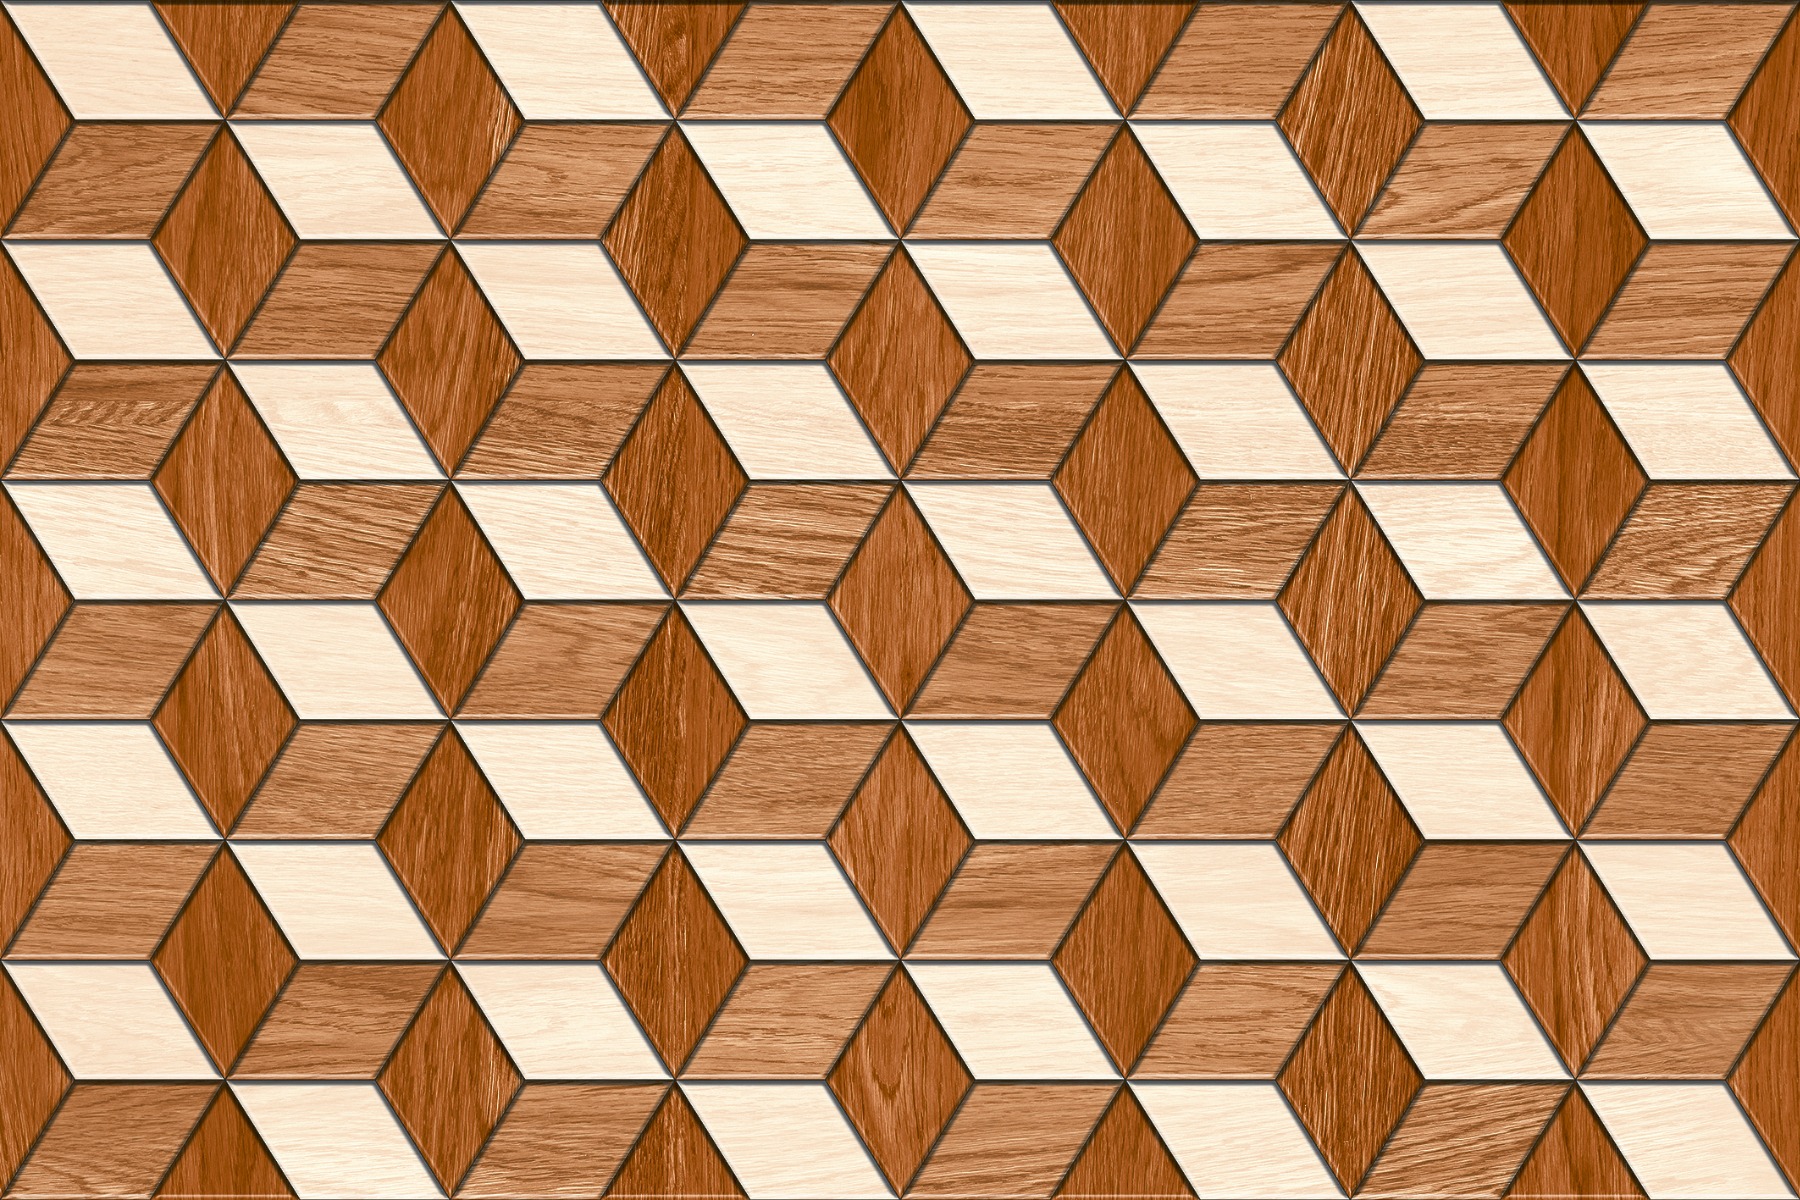 Wooden Tiles for Bathroom Tiles, Living Room Tiles, Kitchen Tiles, Bedroom Tiles, Balcony Tiles